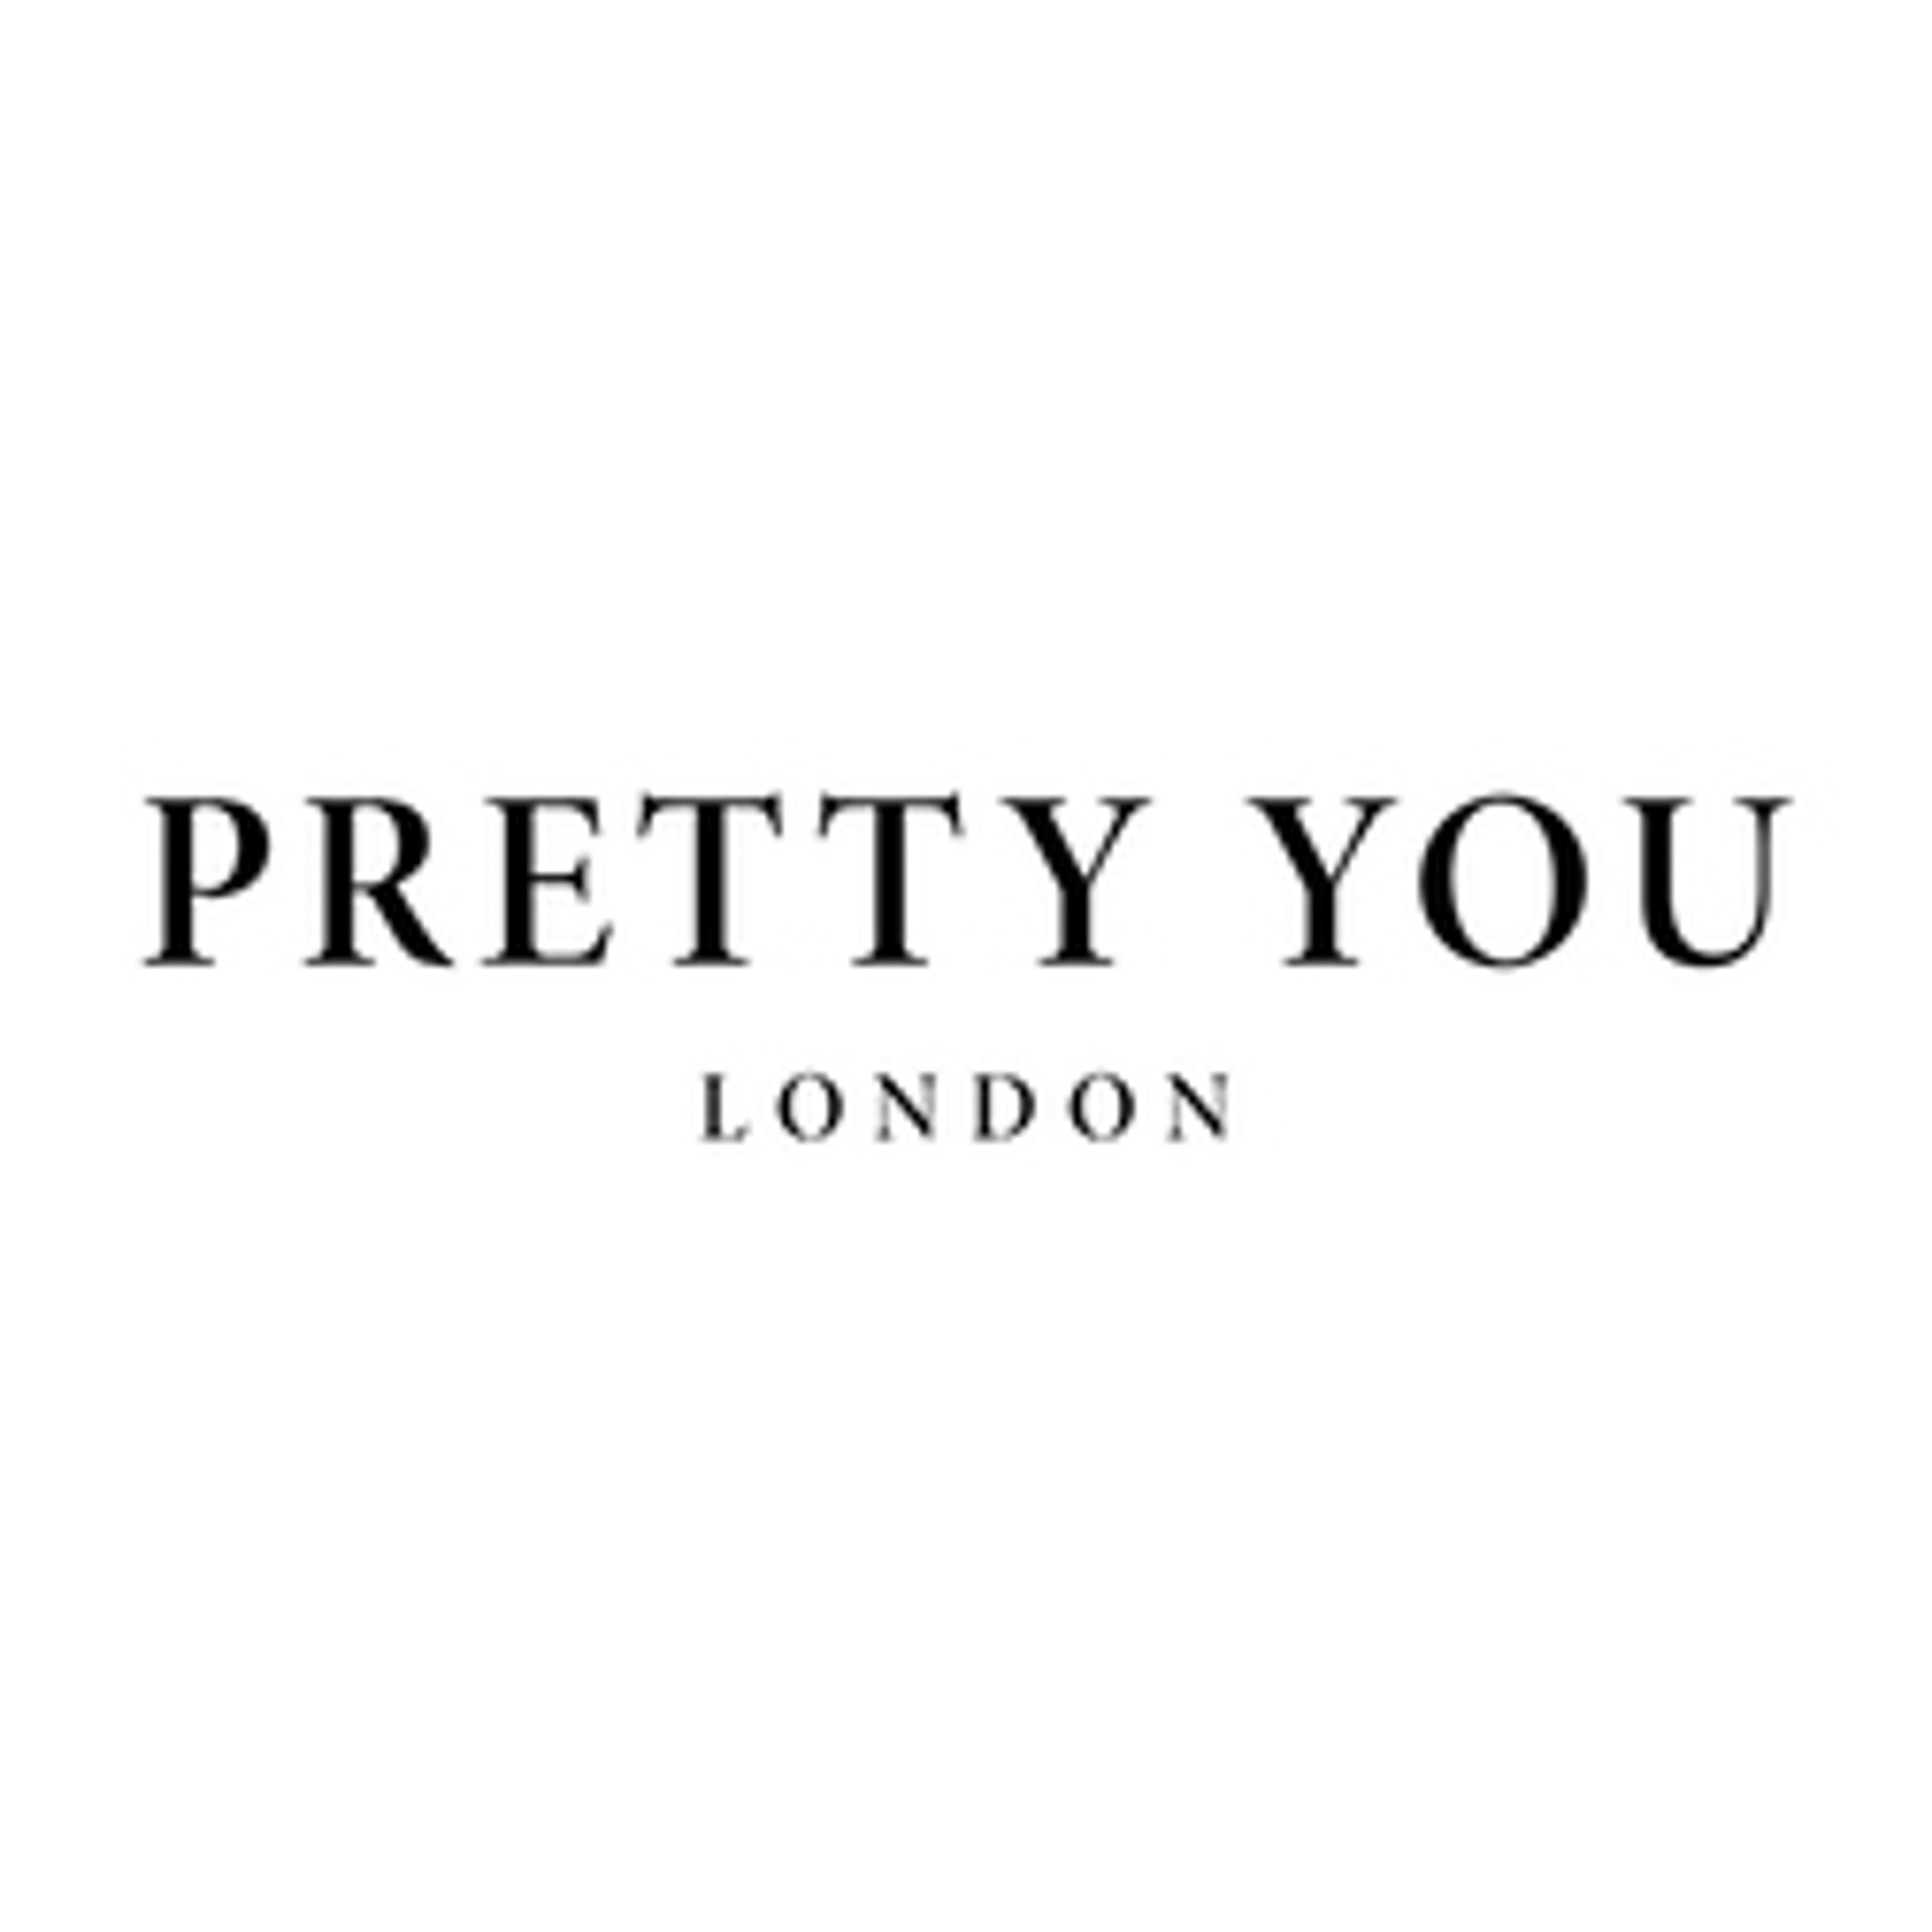  Pretty You London 